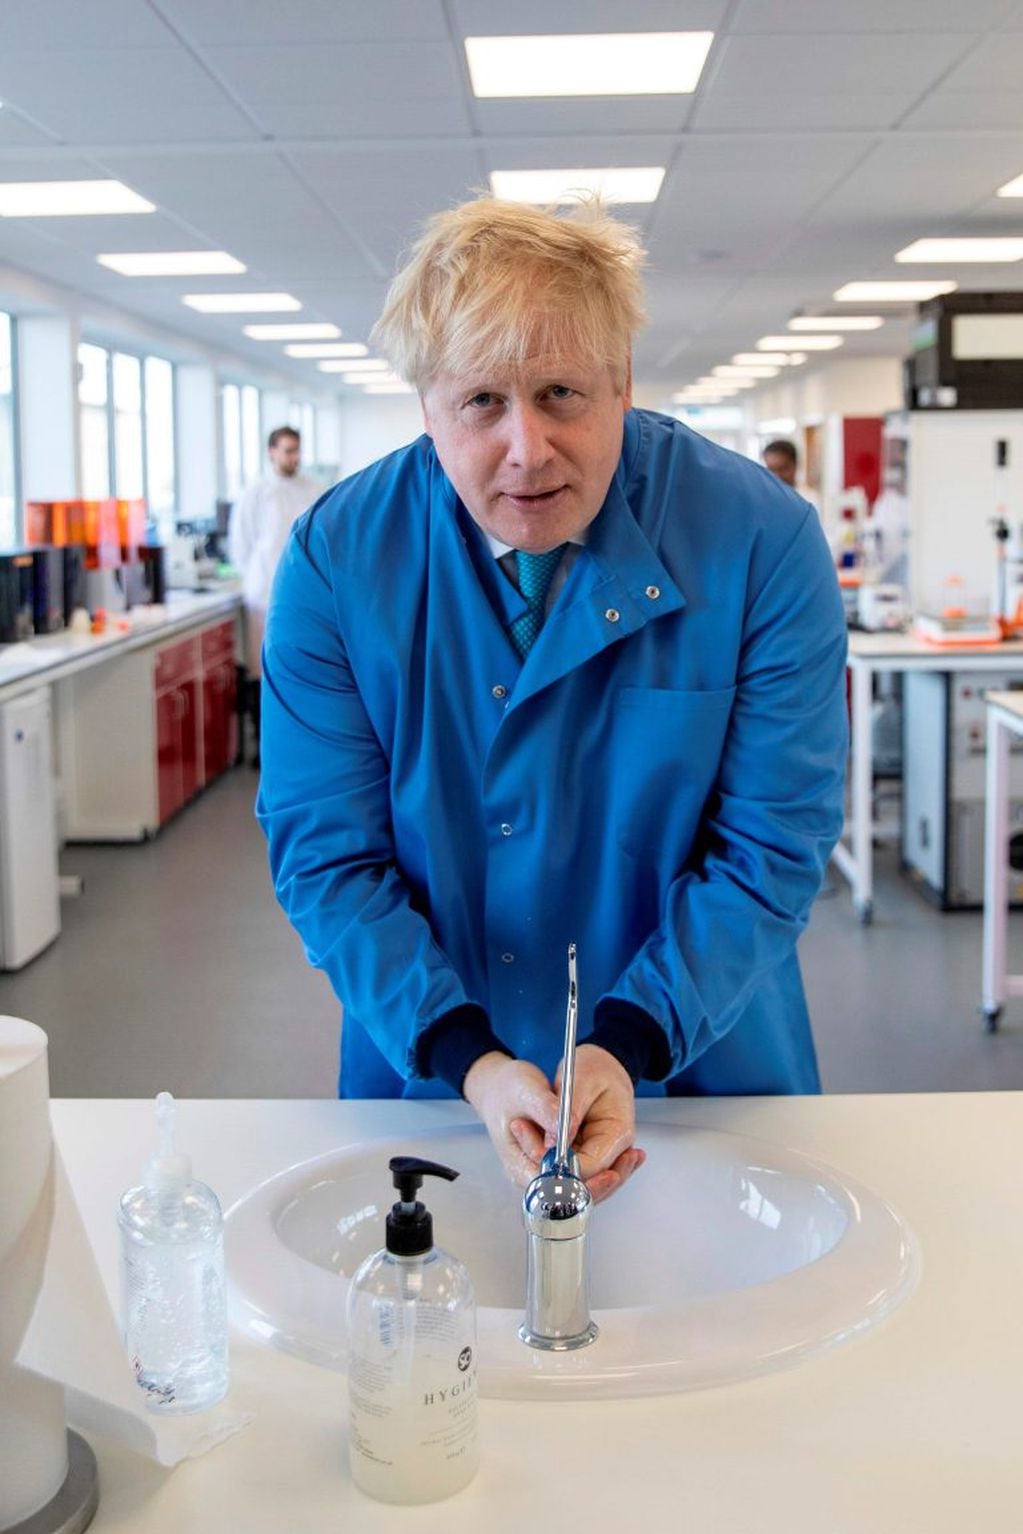 Boris Johnson lavando sus manos en una visita a un laboratorio (Photo by Jack Hill / POOL / AFP)